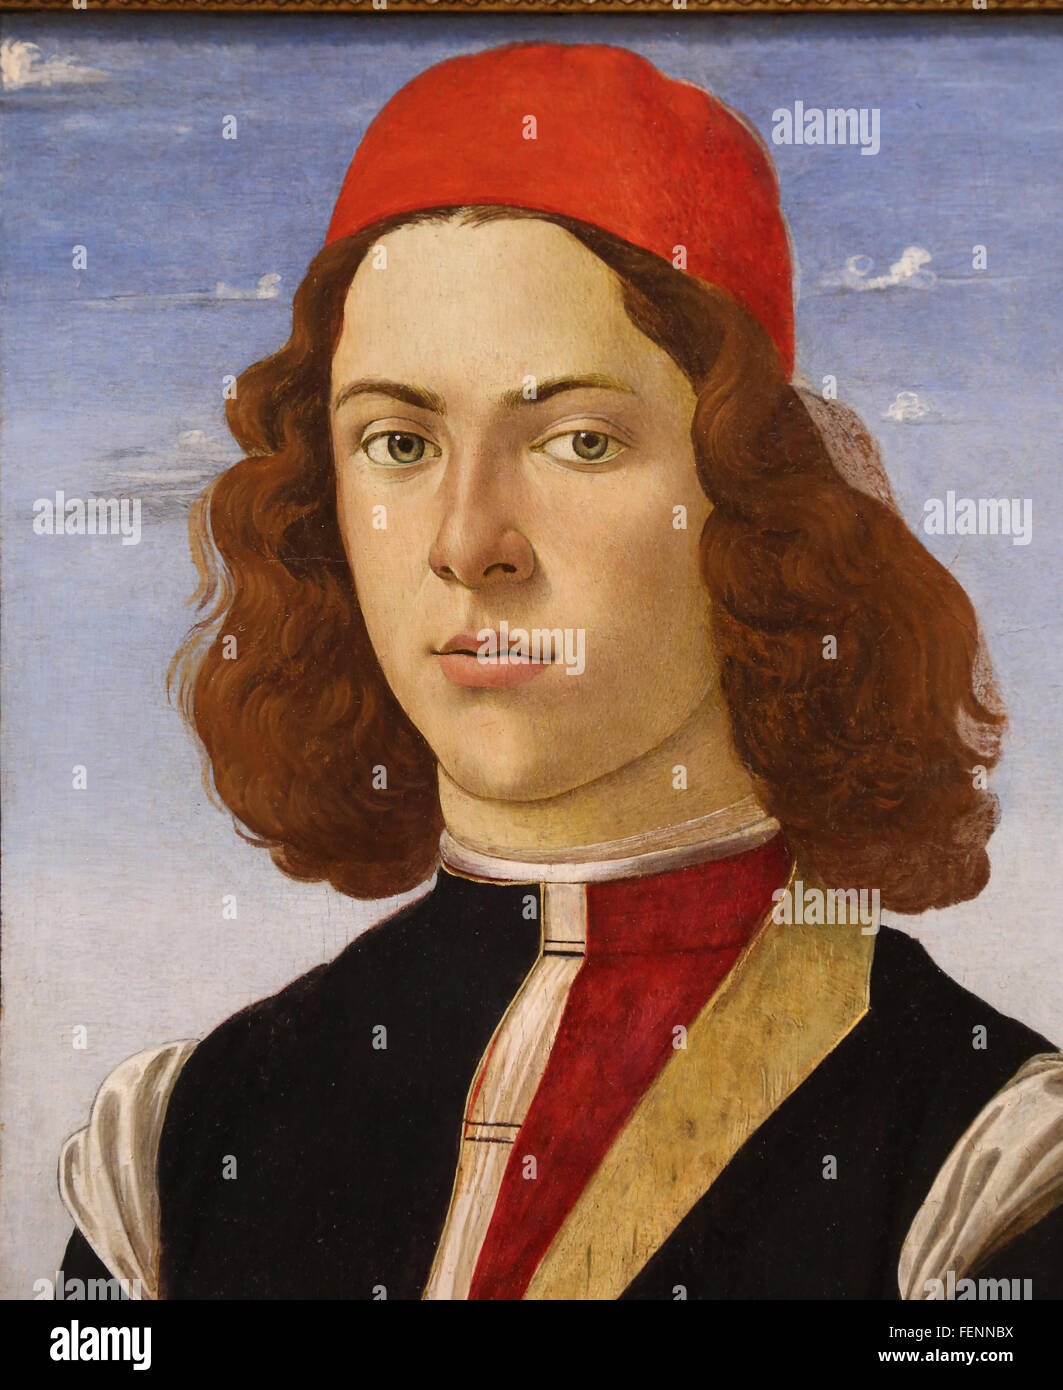 Retrato de un hombre joven, de 1475. Por Sandro Botticelli (1445-1510). Escuela italiana. Óleo sobre lienzo. El Museo del Louvre. París. Francia. Foto de stock